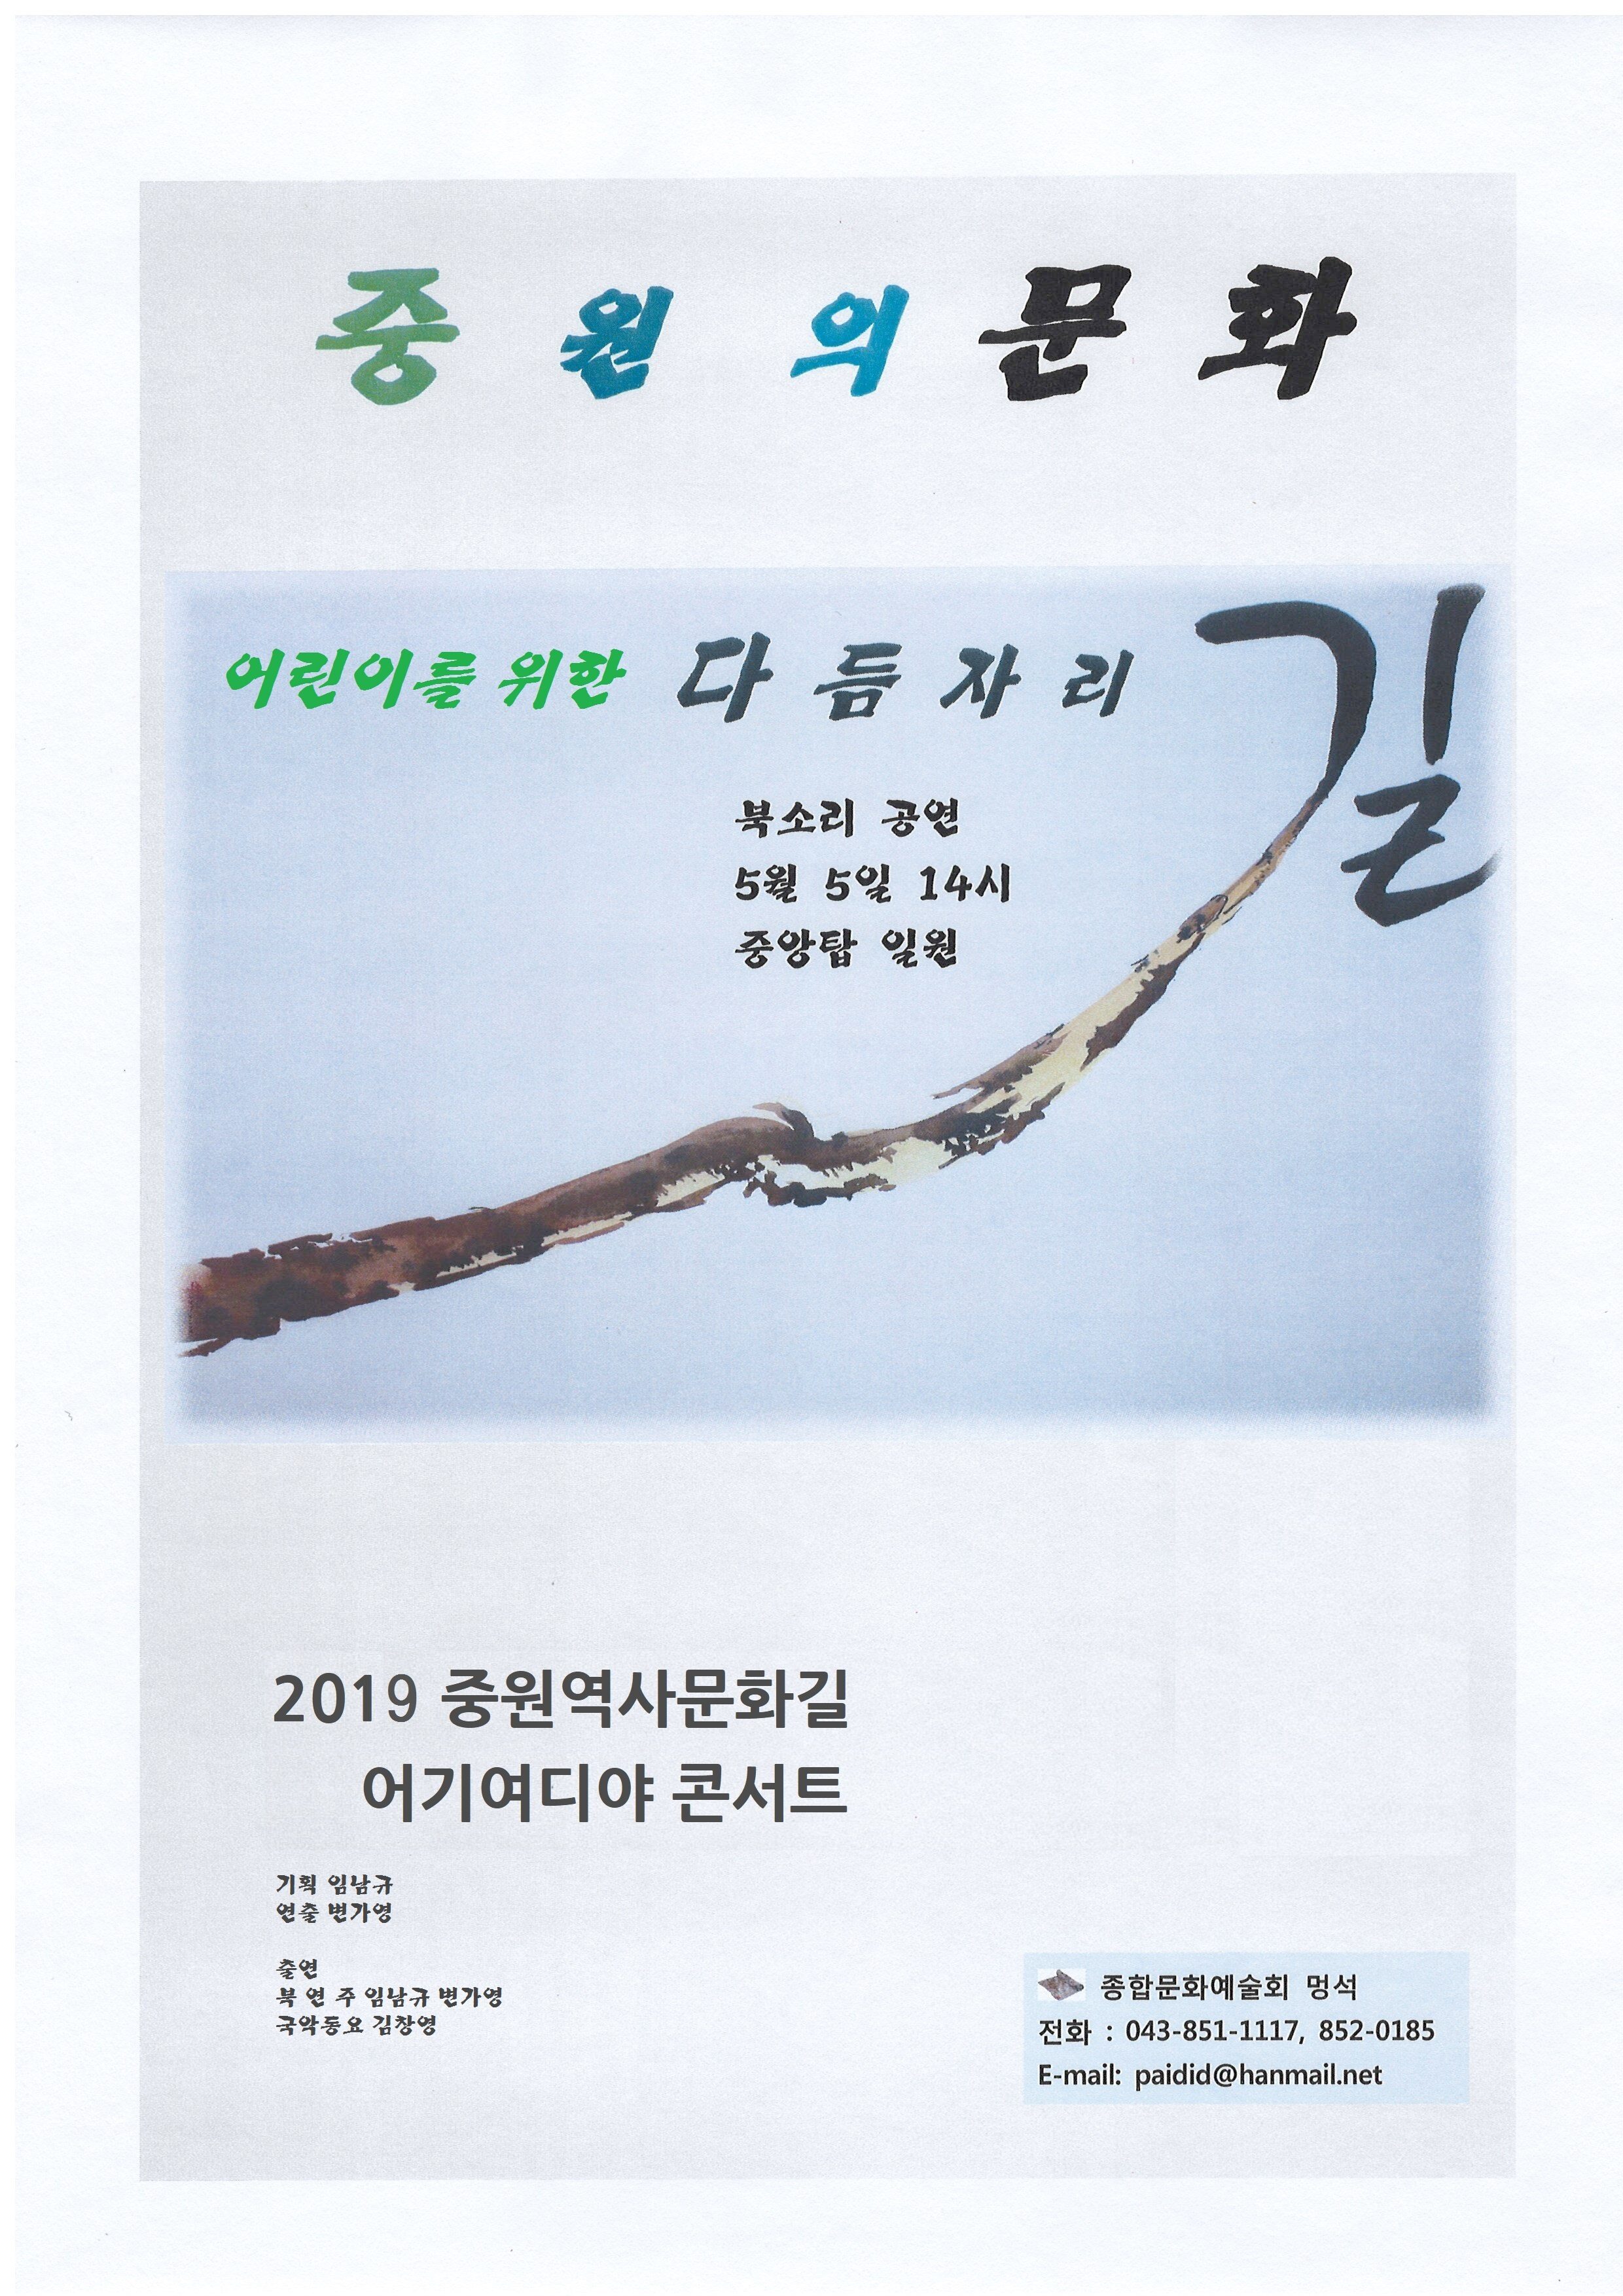 2019 다듬자리길북공연